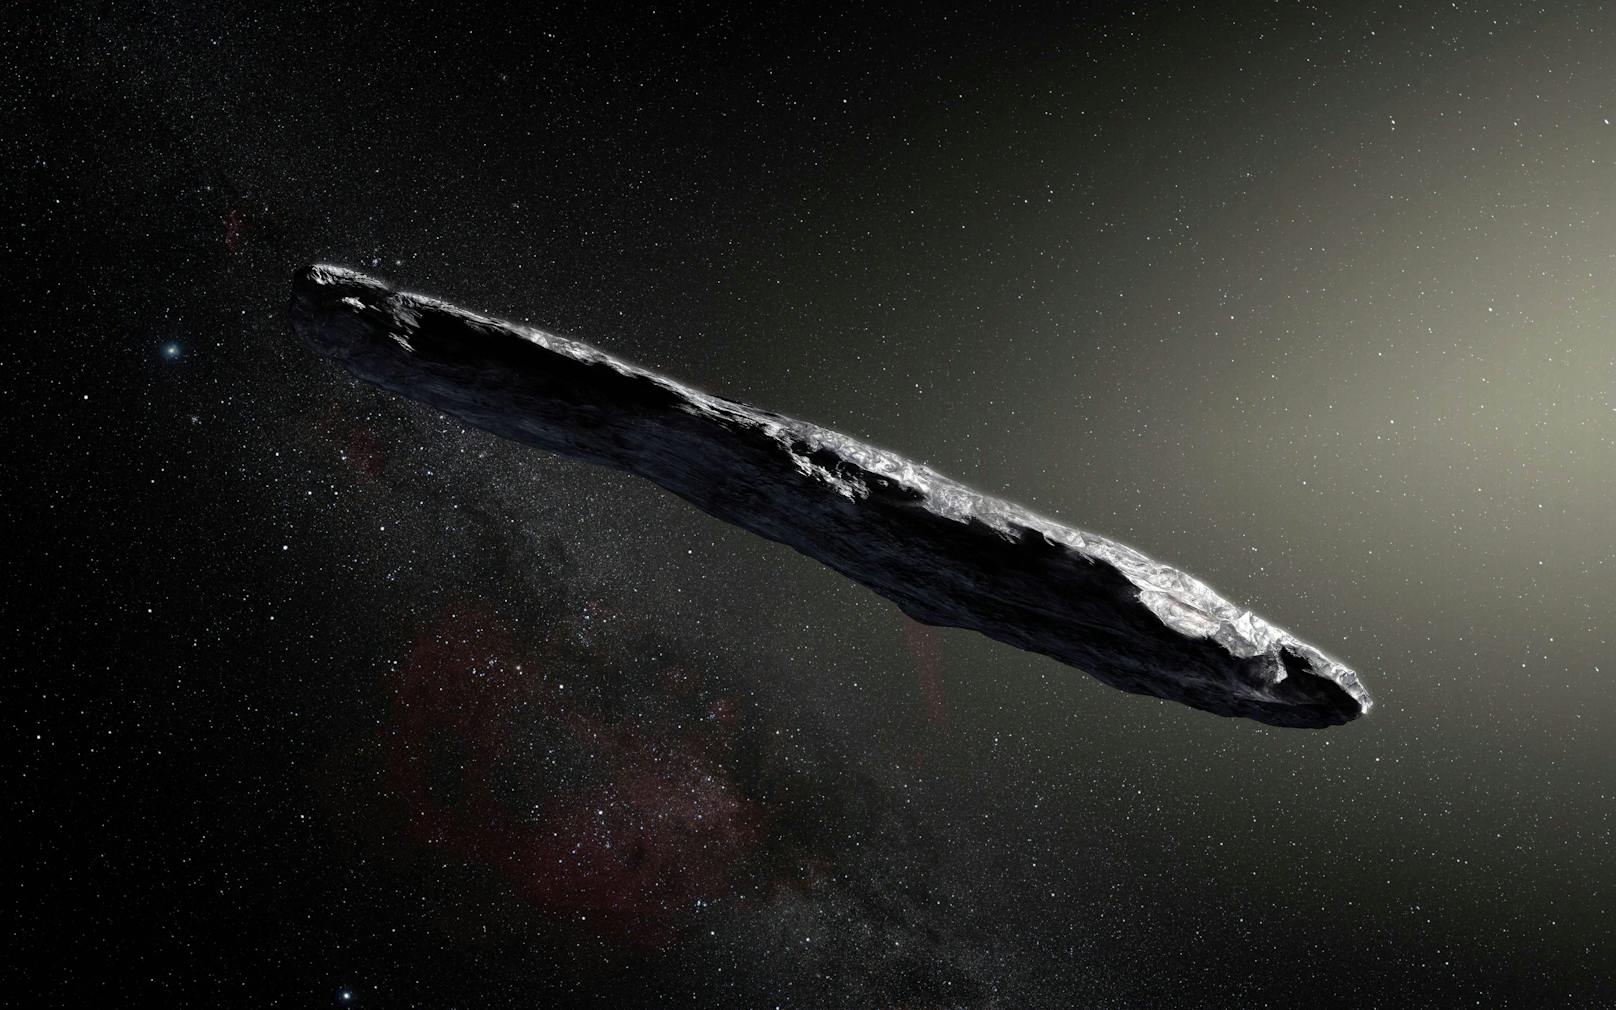 So könnte "Oumuamua" ausgesehen haben: Der interstellare Flugkörper war rund fünf Mal so lang wie breit.